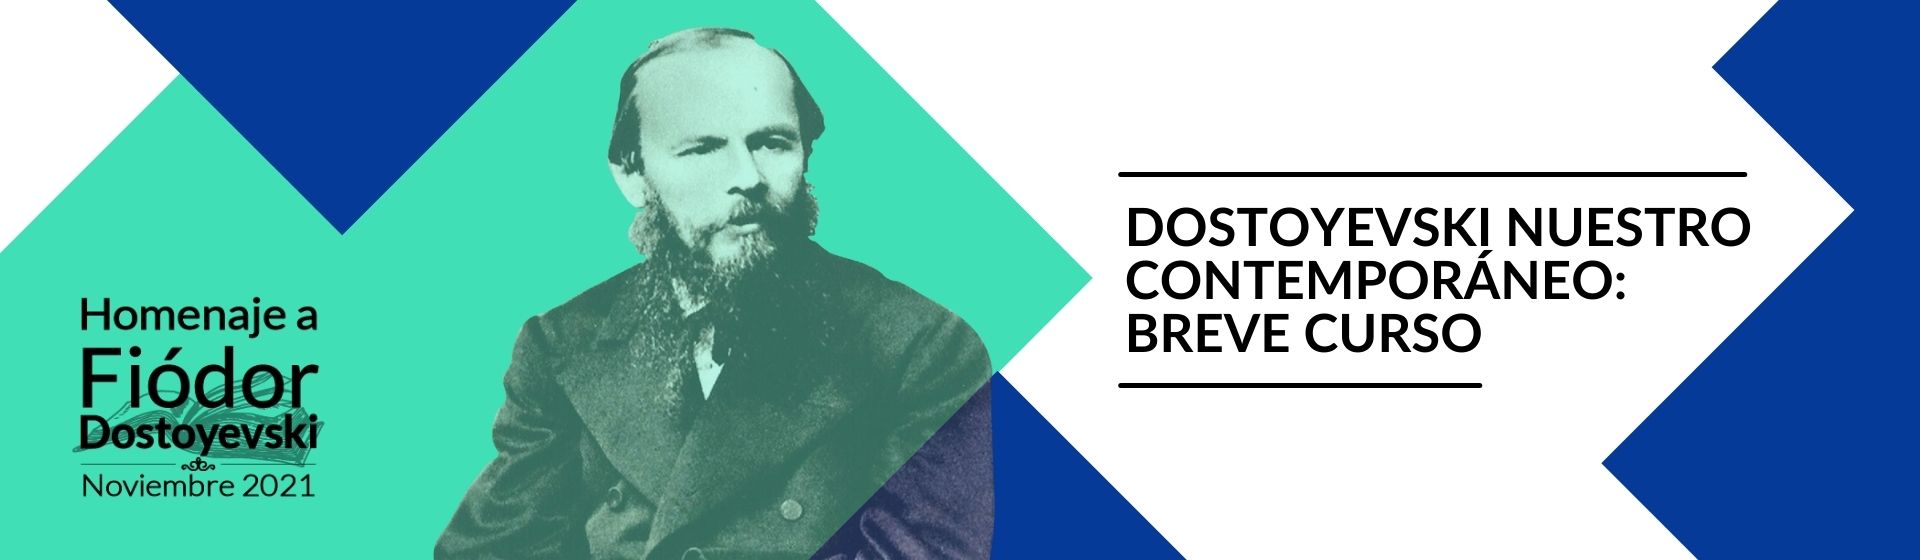 Dostoyevski nuestro contemporáneo | Uniandes